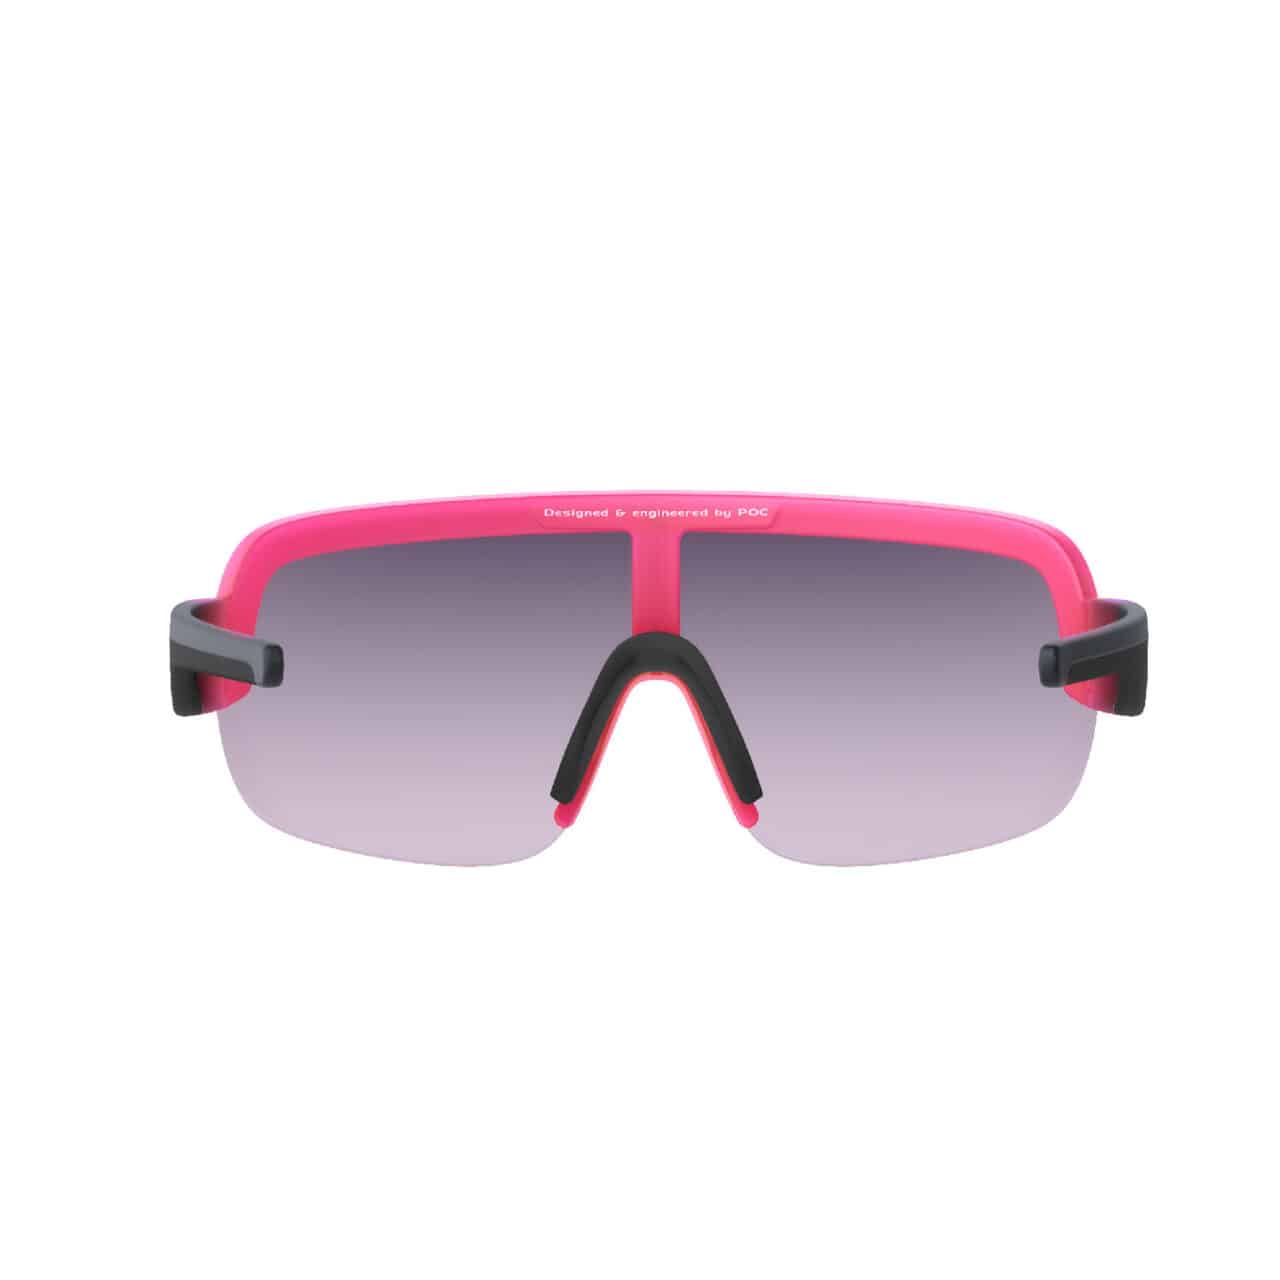 Poc Aim Sunglasses pink viewport